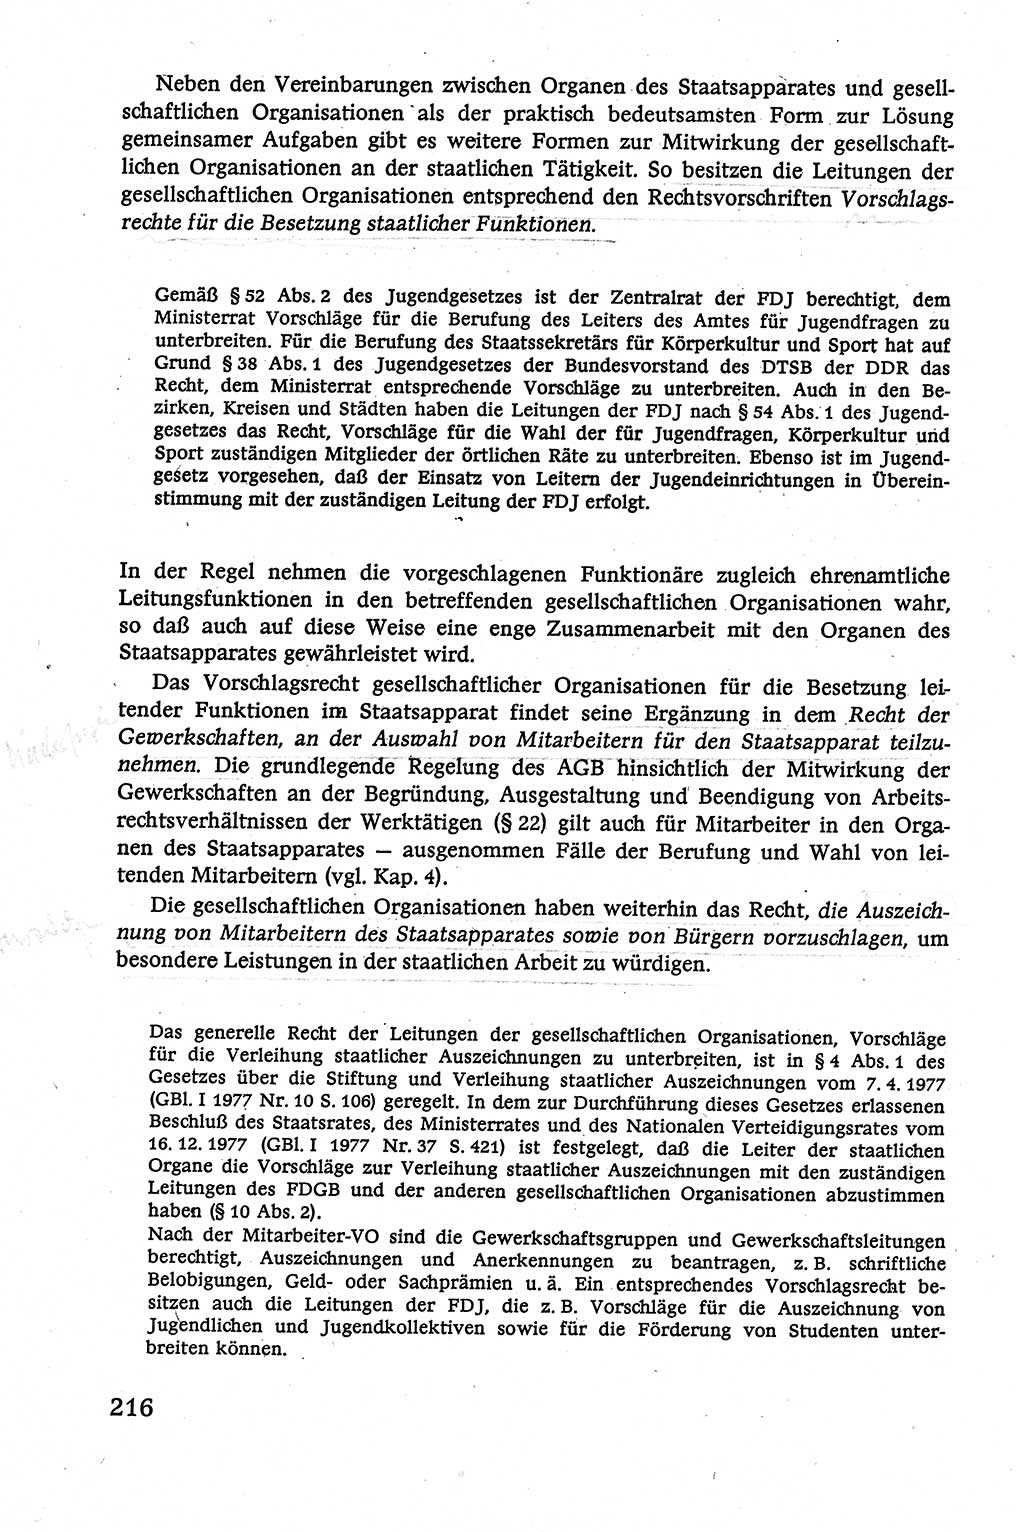 Verwaltungsrecht [Deutsche Demokratische Republik (DDR)], Lehrbuch 1979, Seite 216 (Verw.-R. DDR Lb. 1979, S. 216)